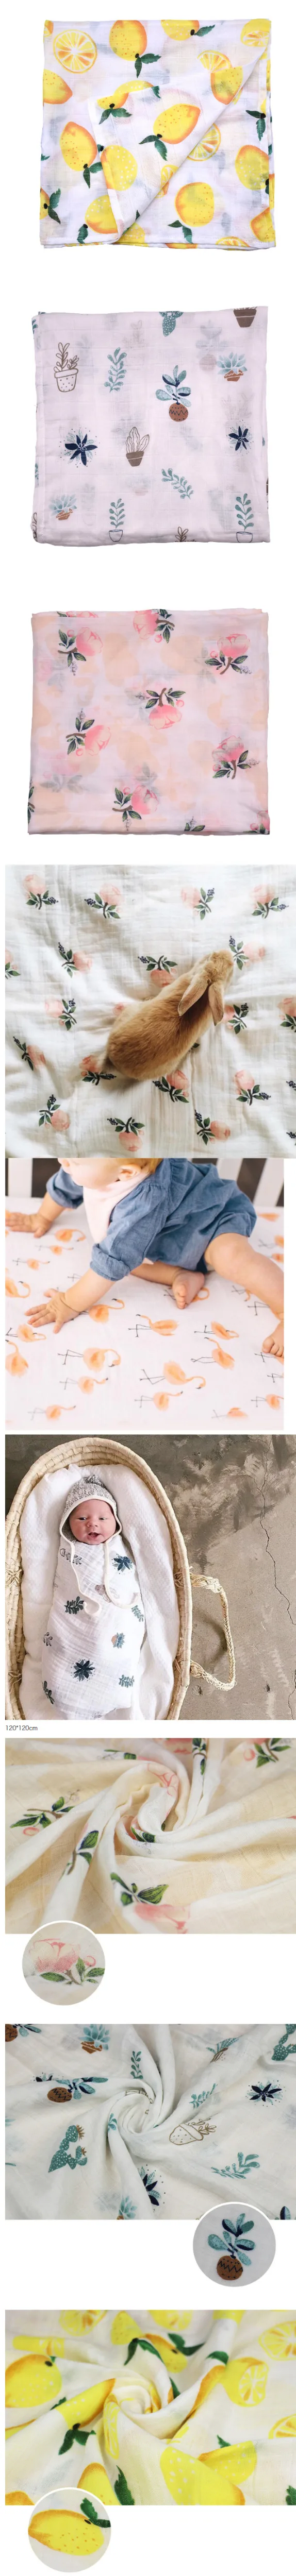 Окей мам детское одеяло пеленать новорожденного 120x120 см супер мягкий дышащий Мульти-Применение Муслин Хлопок Обёрточная бумага лимон розы